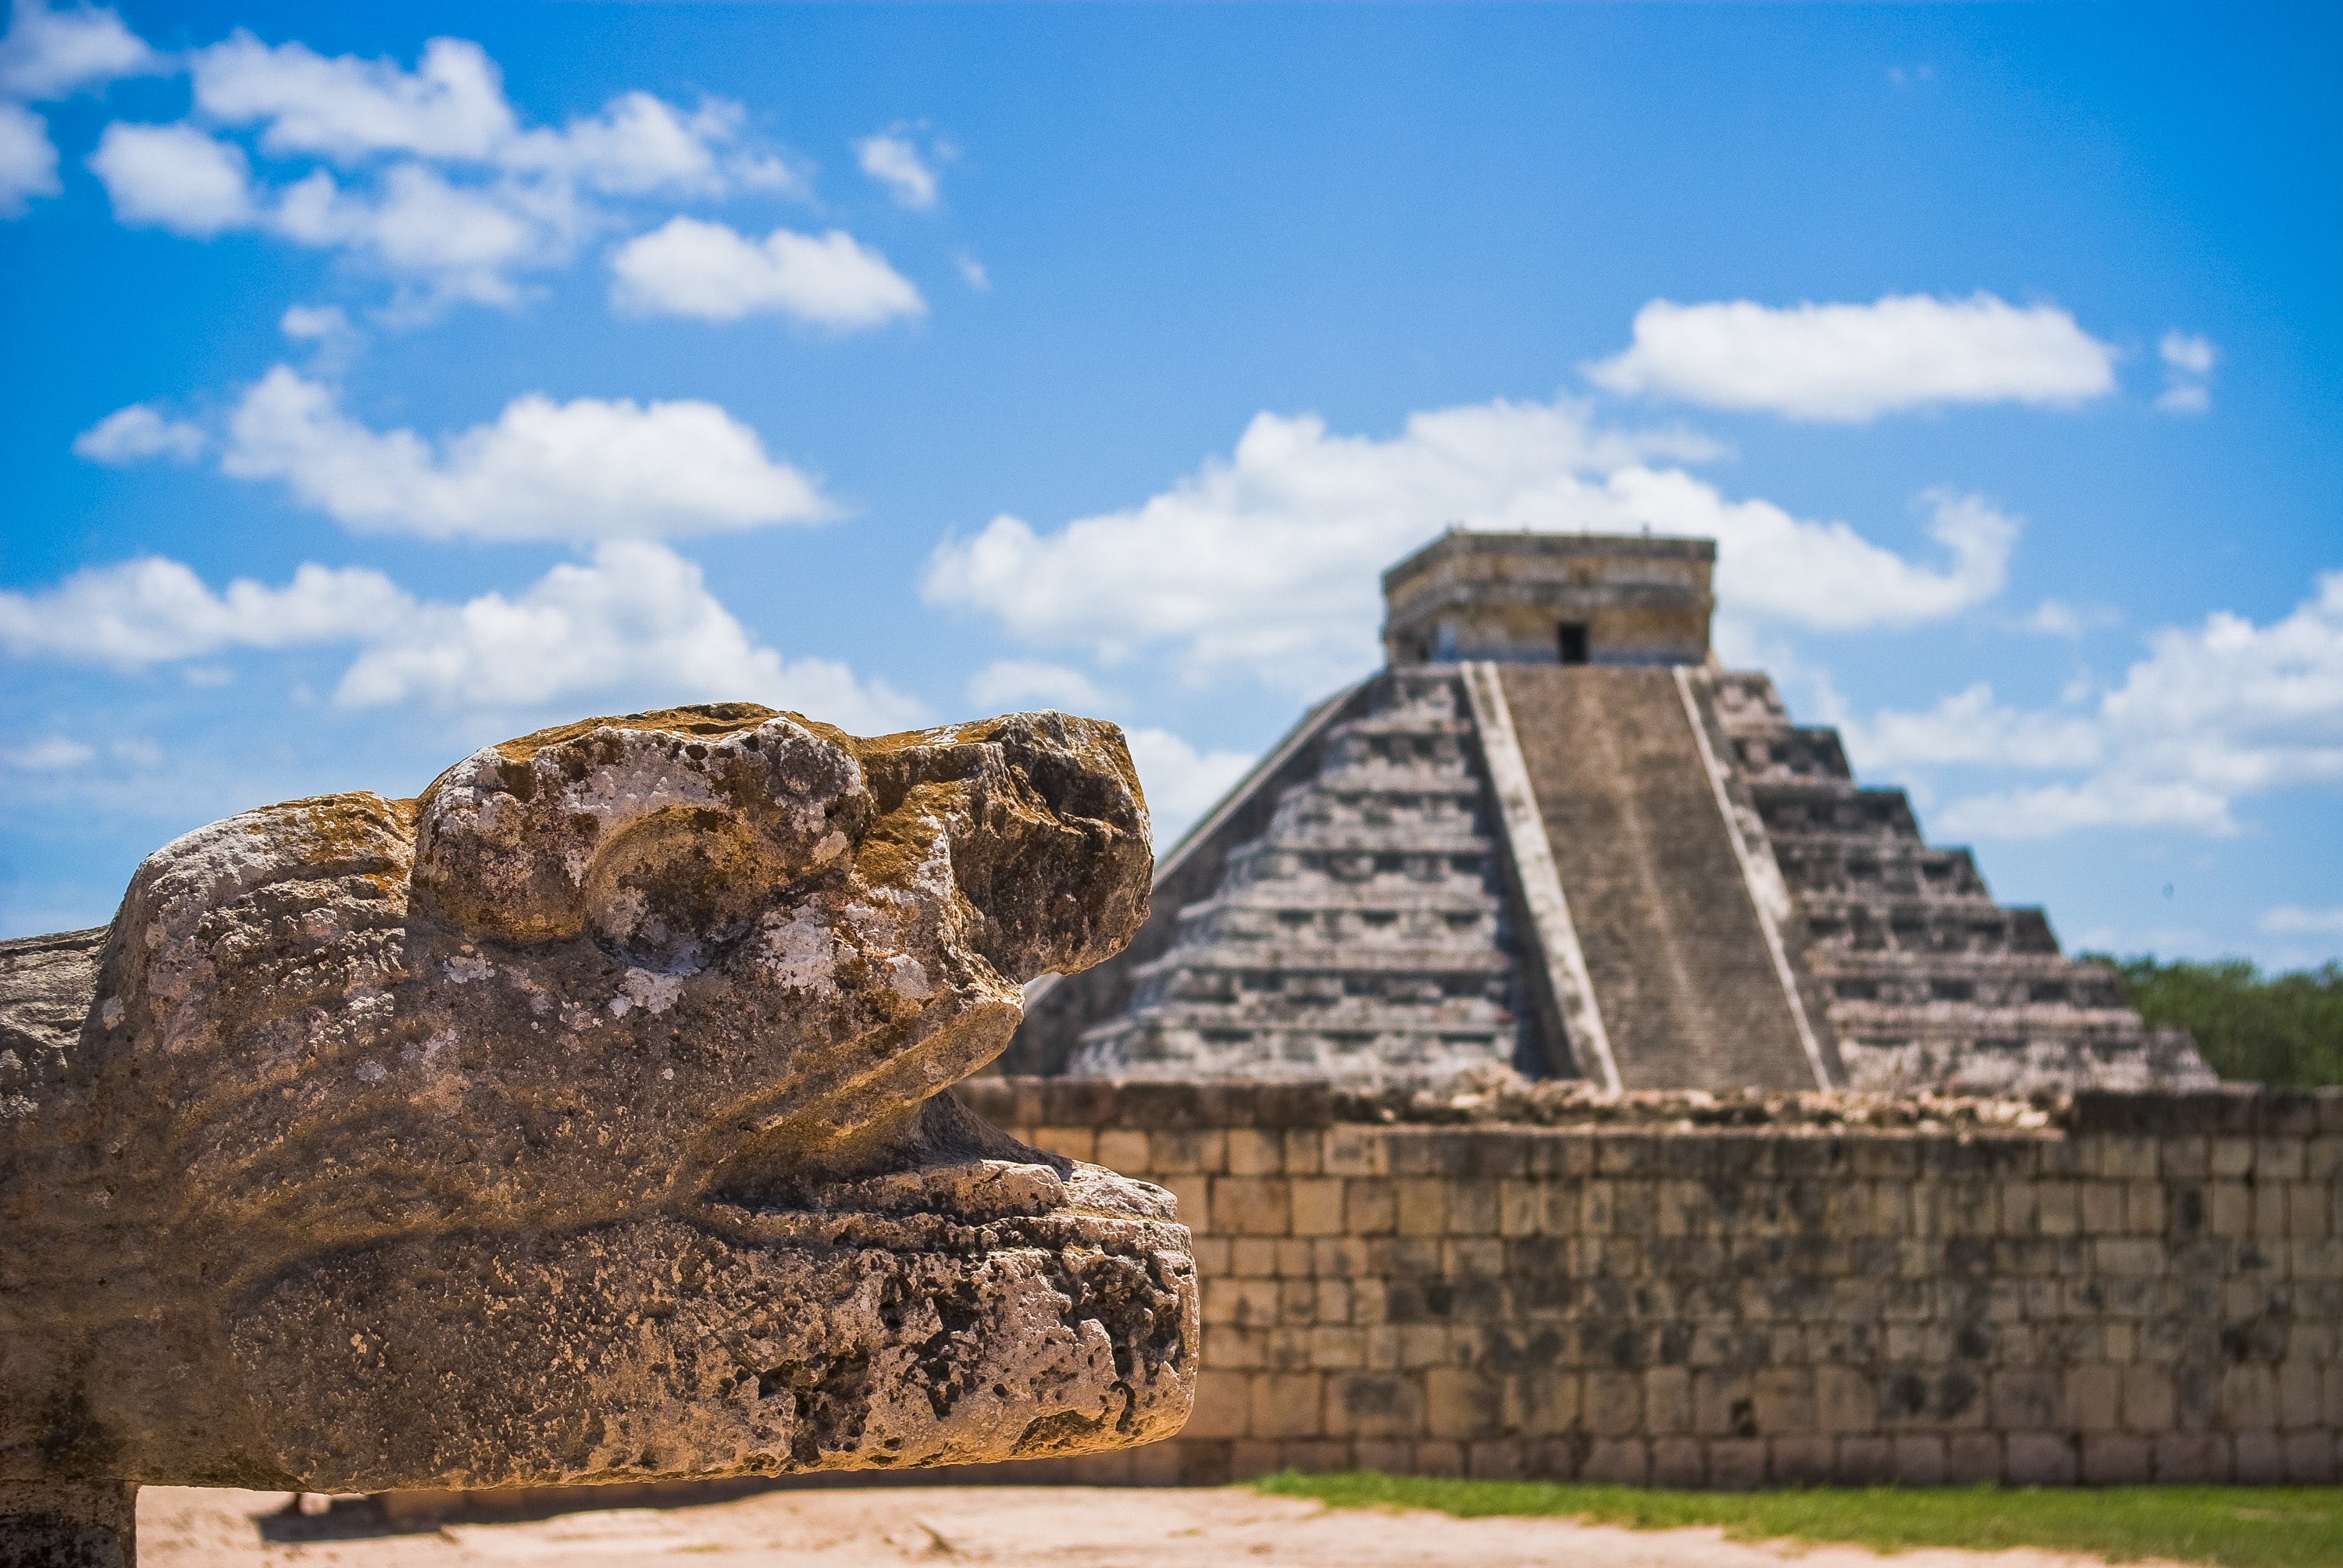 El Castillo pyramid in Chichén Itzá